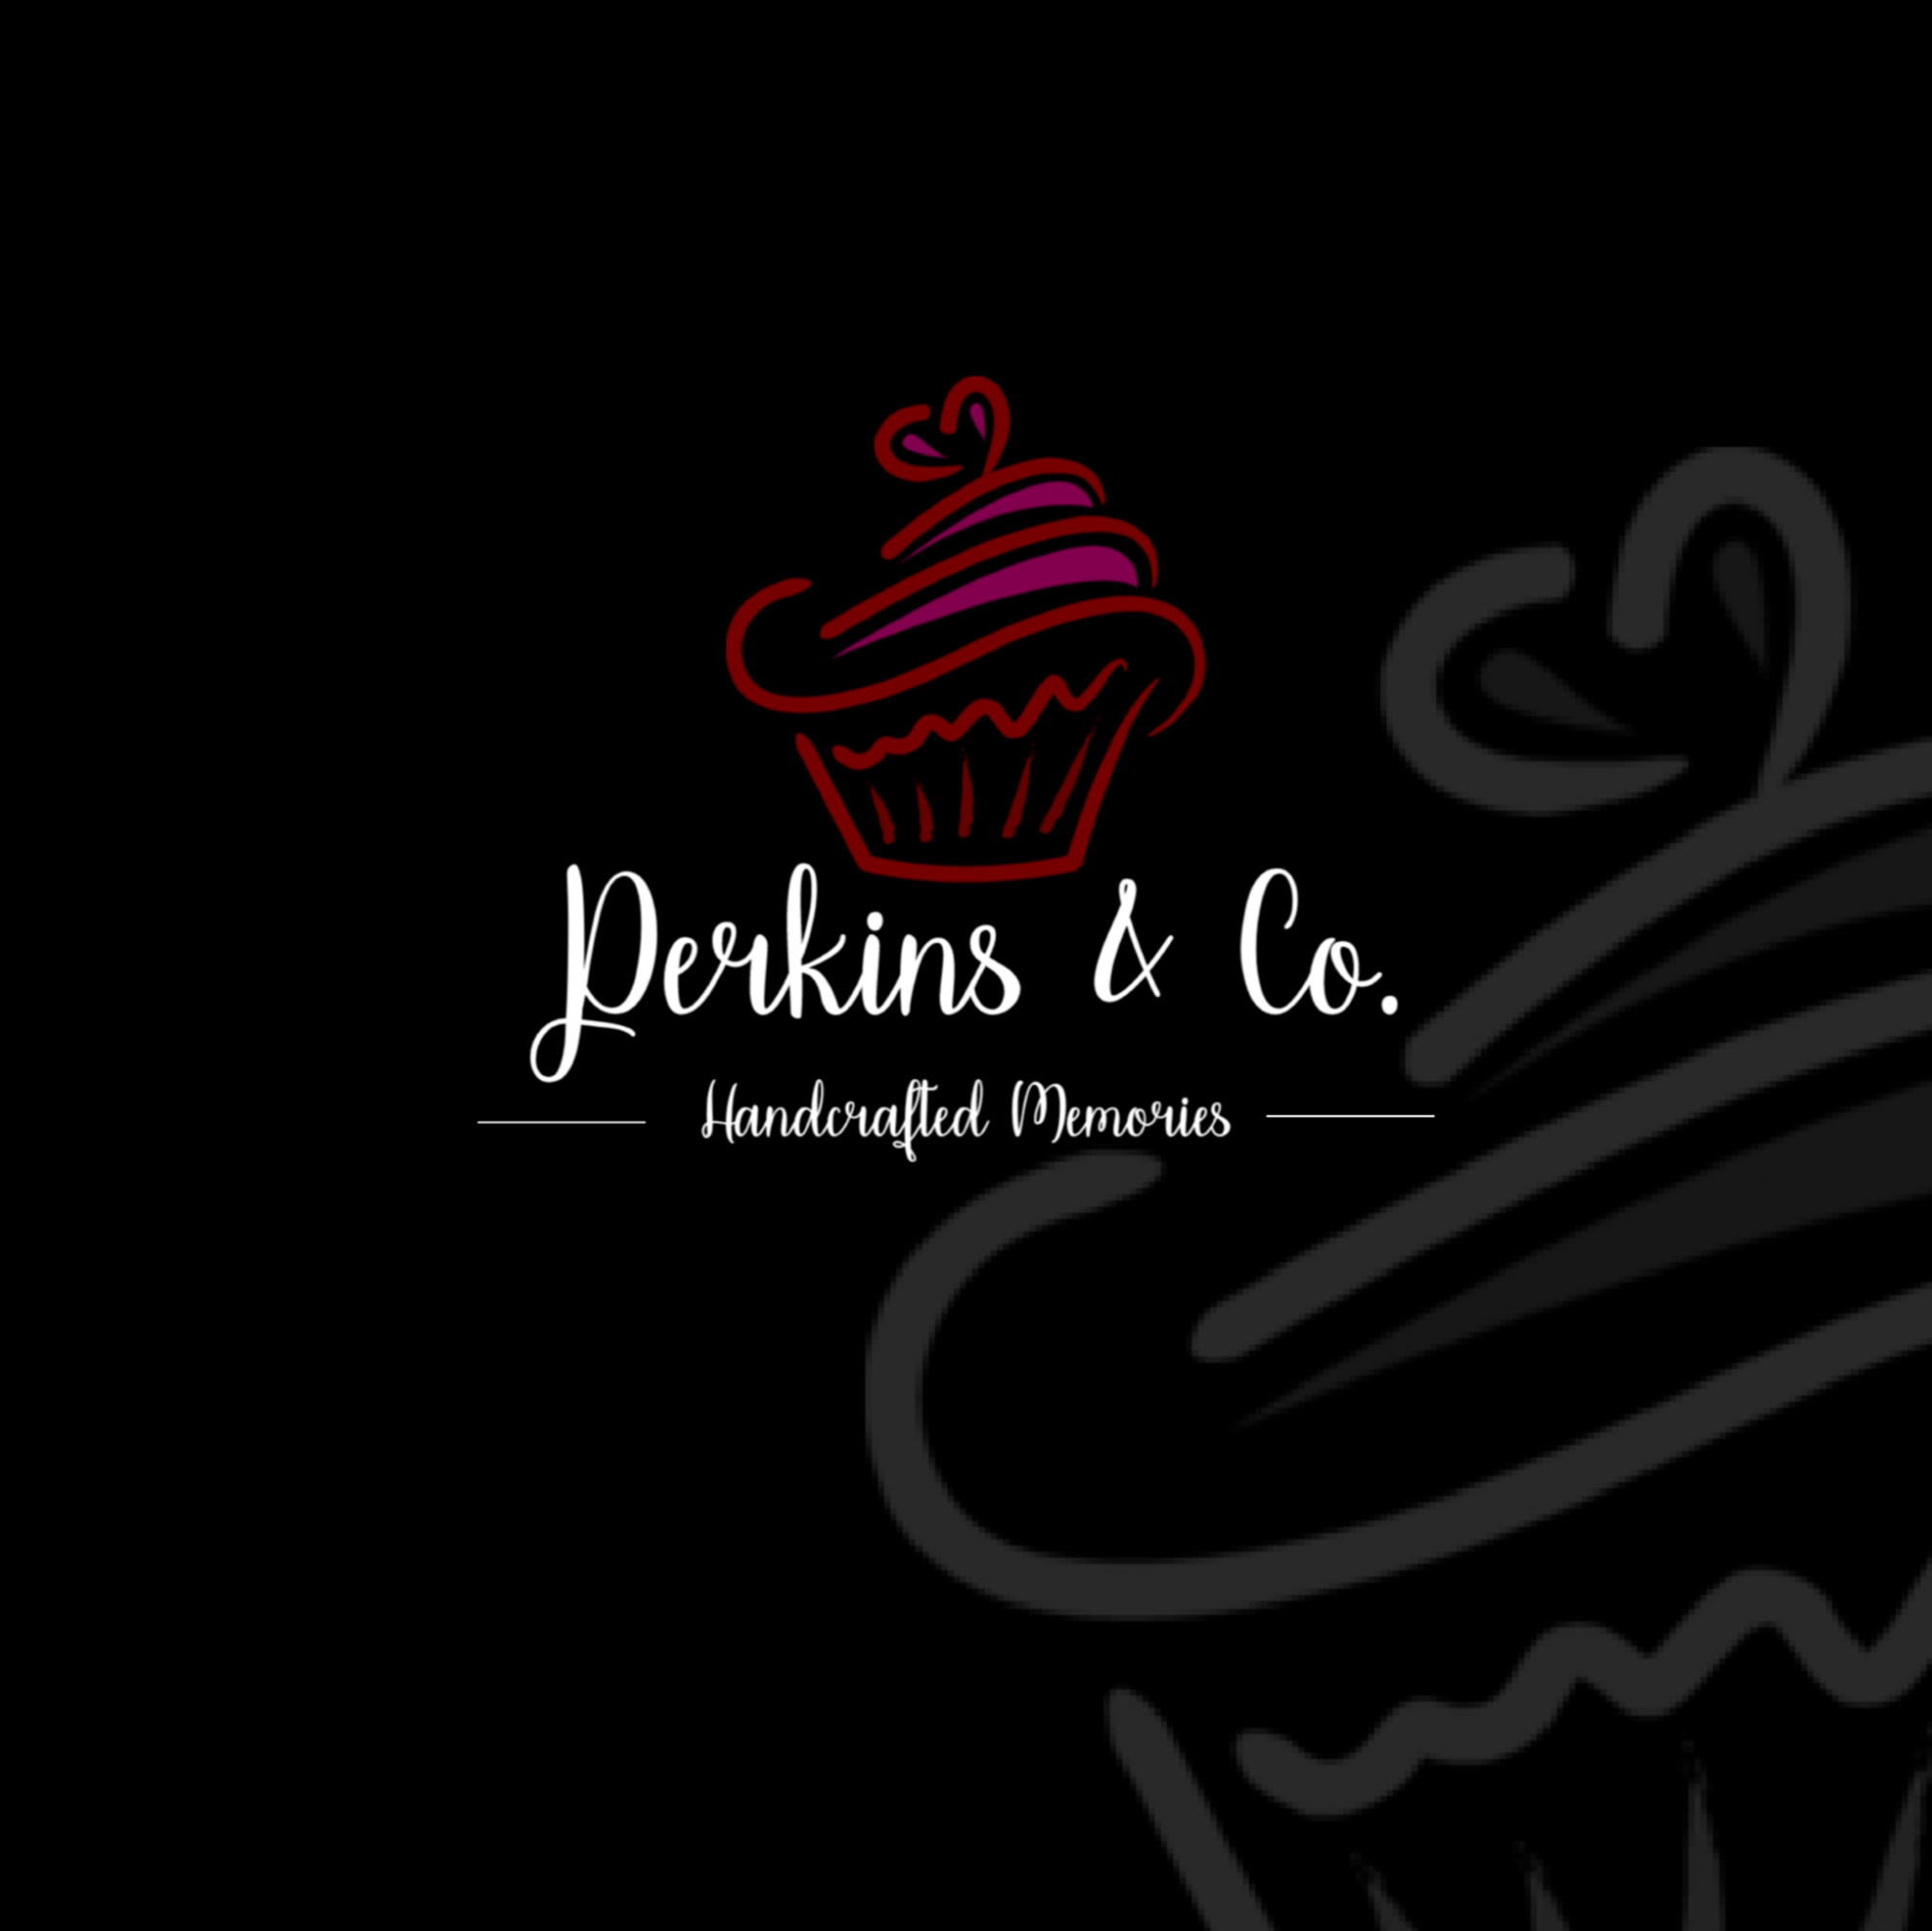 Perkins & Co.